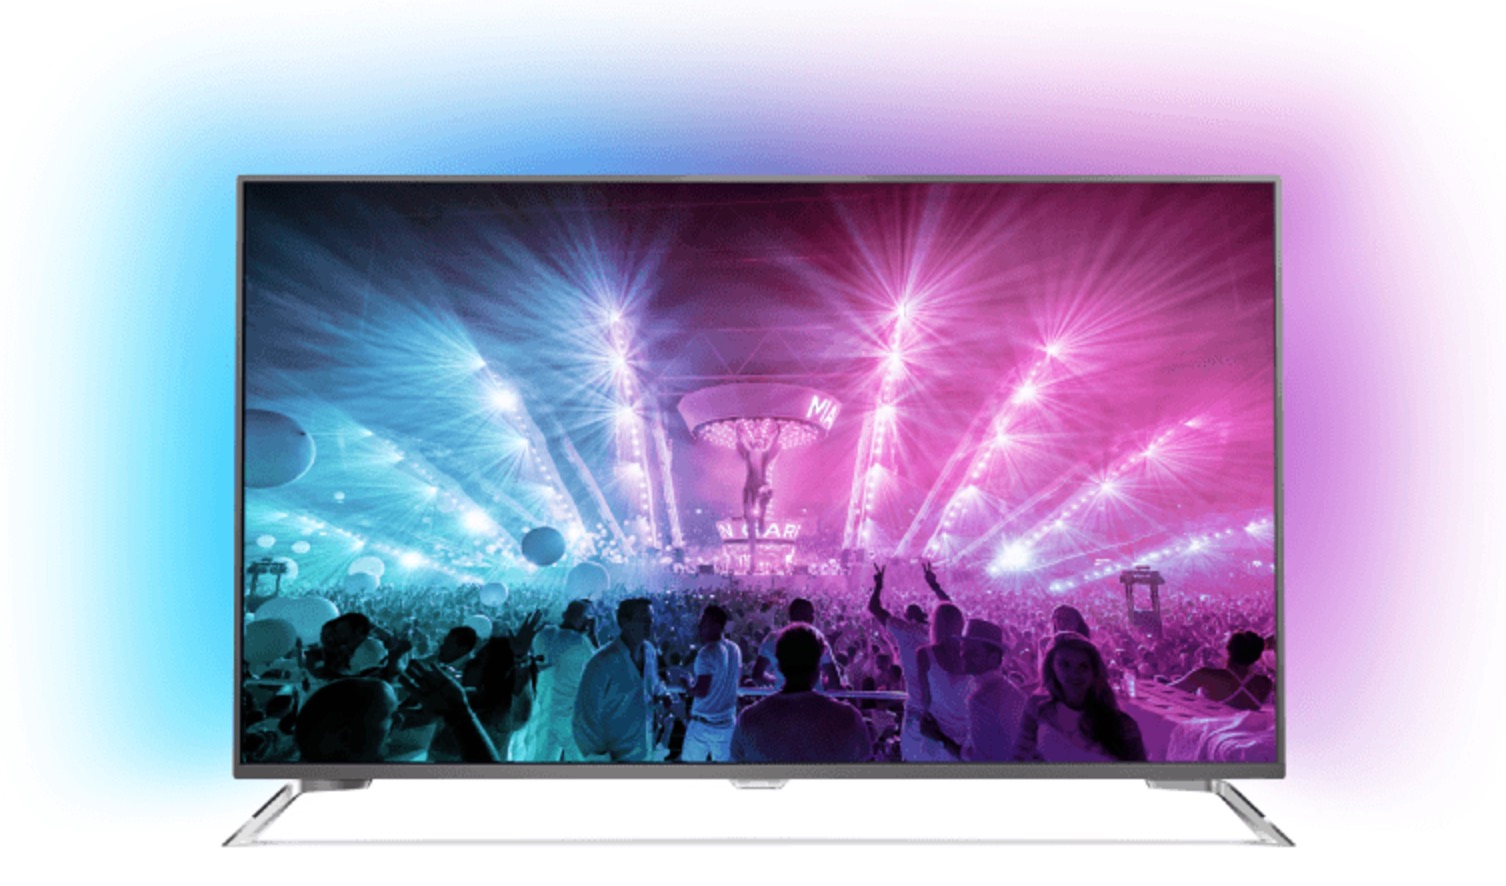 PHILIPS 75PUS7101/12 LED TV 75 Zoll UHD 4K Smart TV für nur 1.799,- Euro inkl. Versand + 100,- Euro Geschenkgutschein